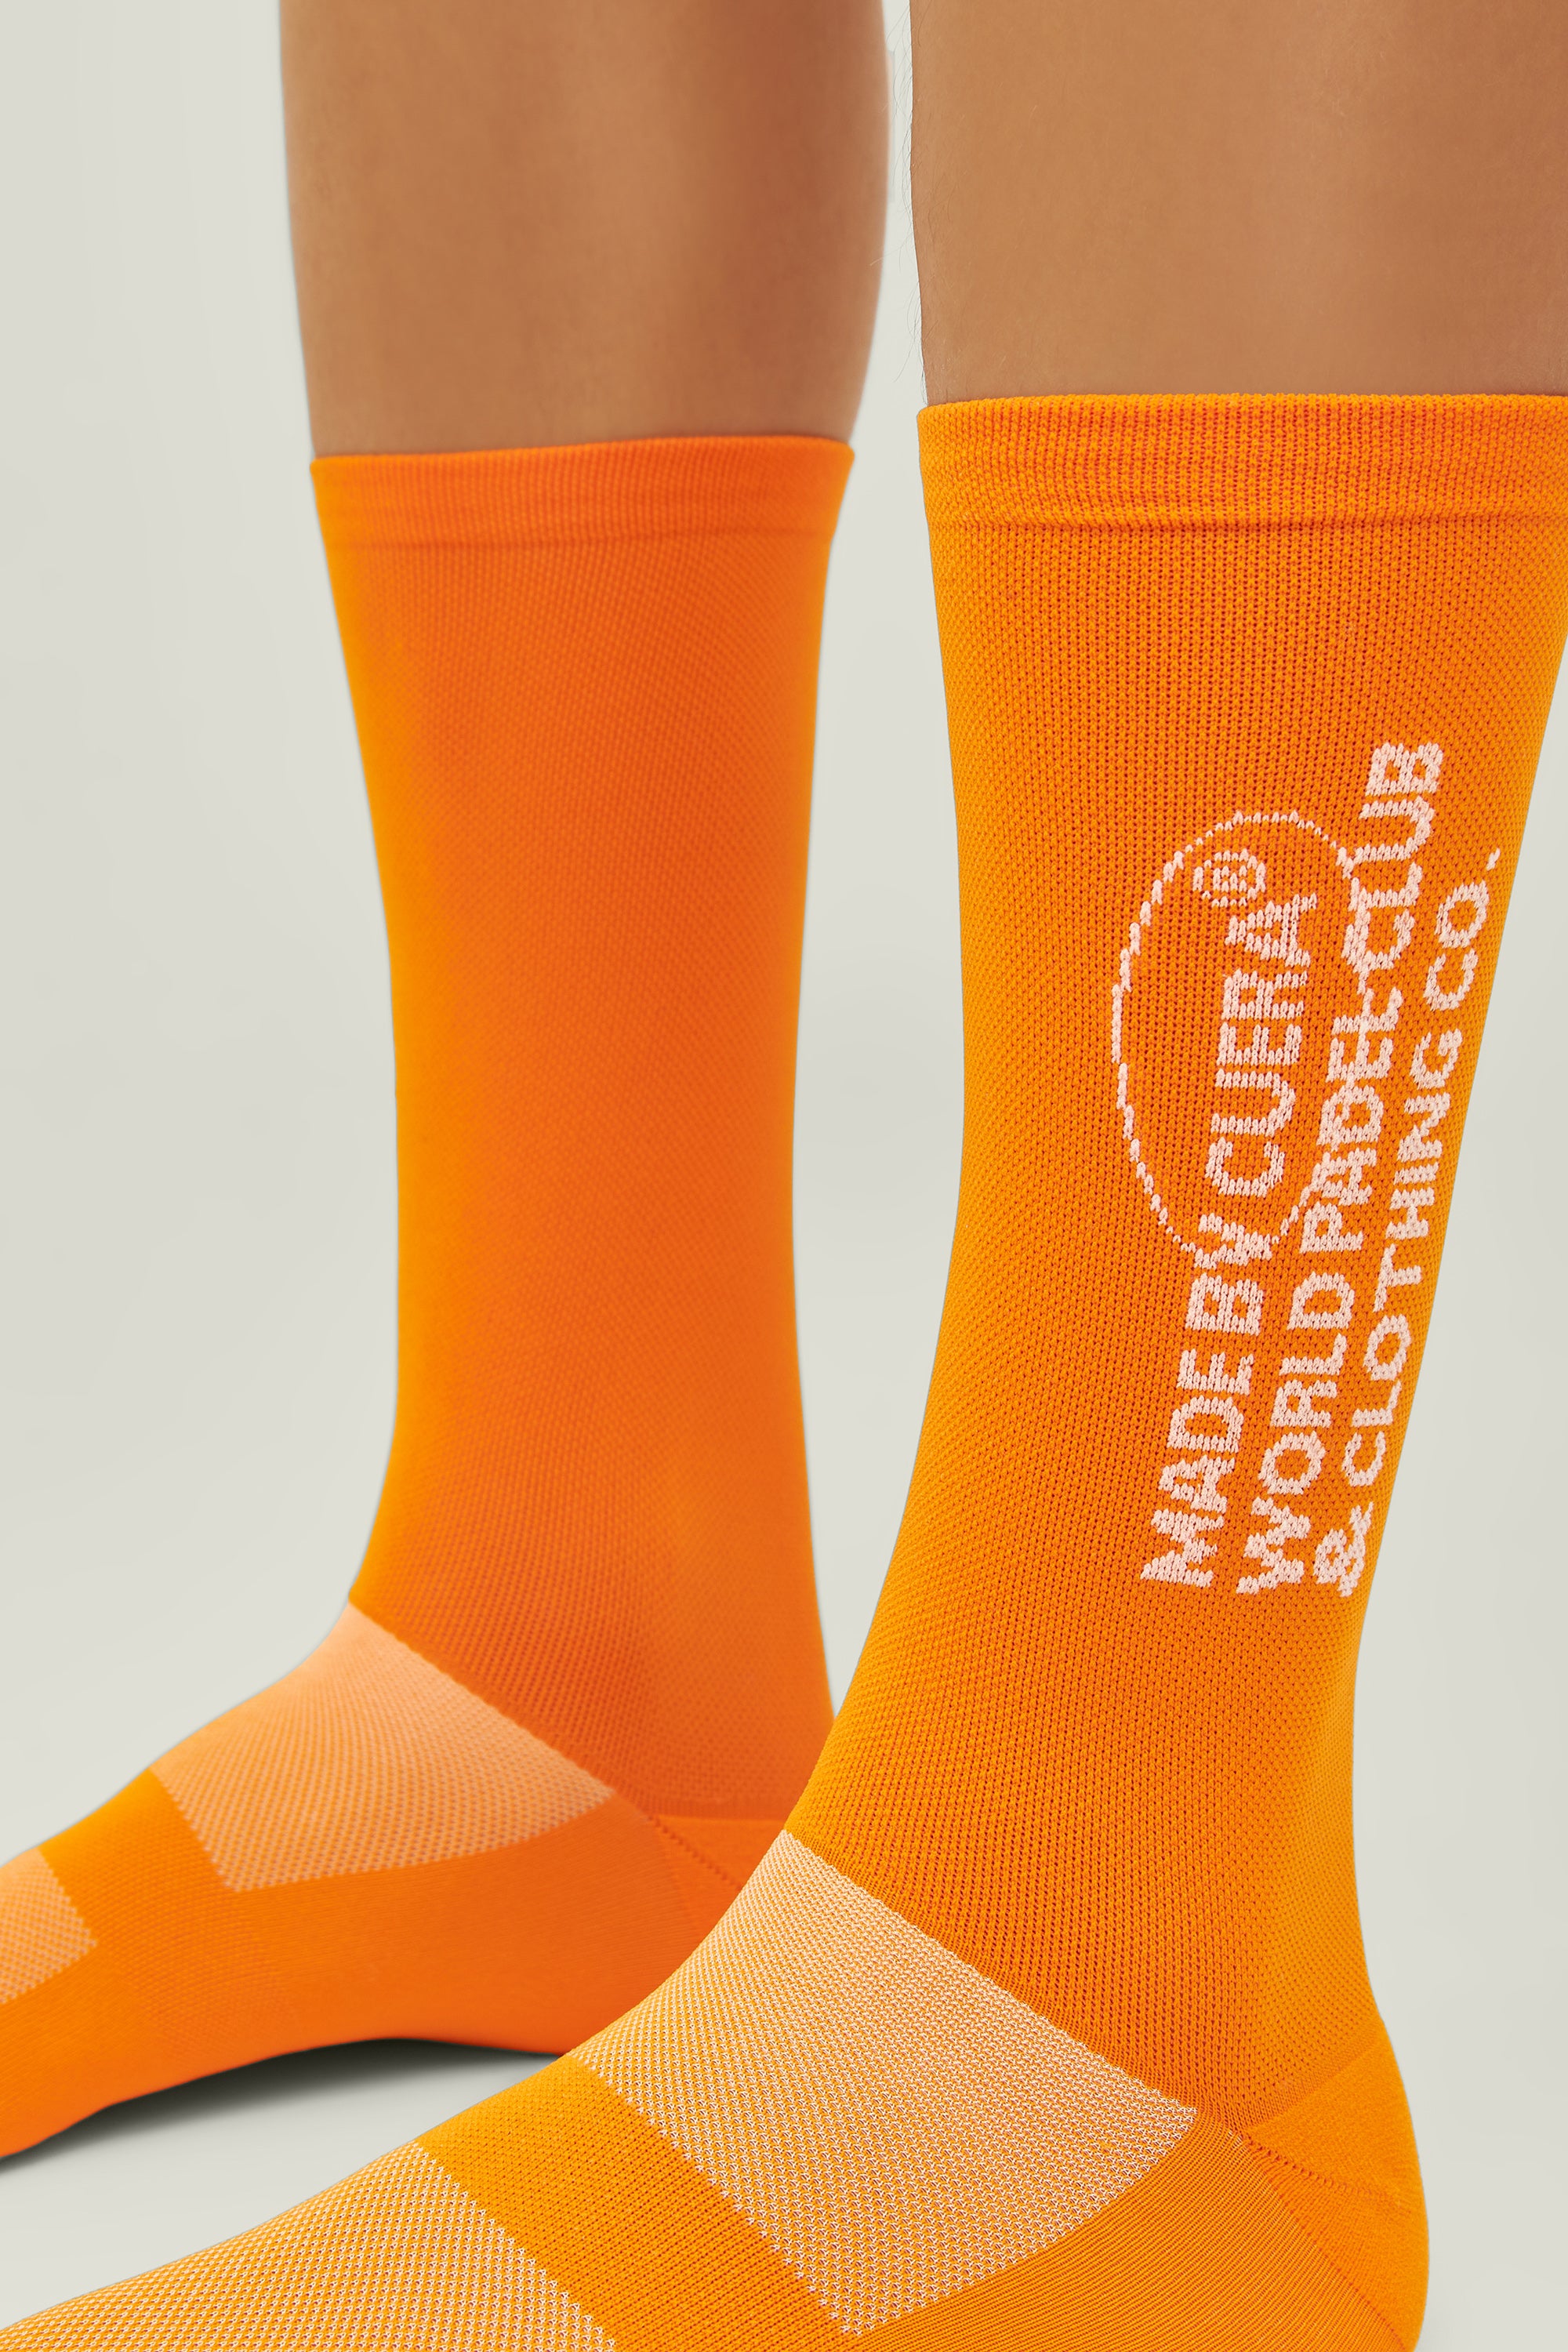 Cuera Premium Padel Sportsstrømper (Orange)